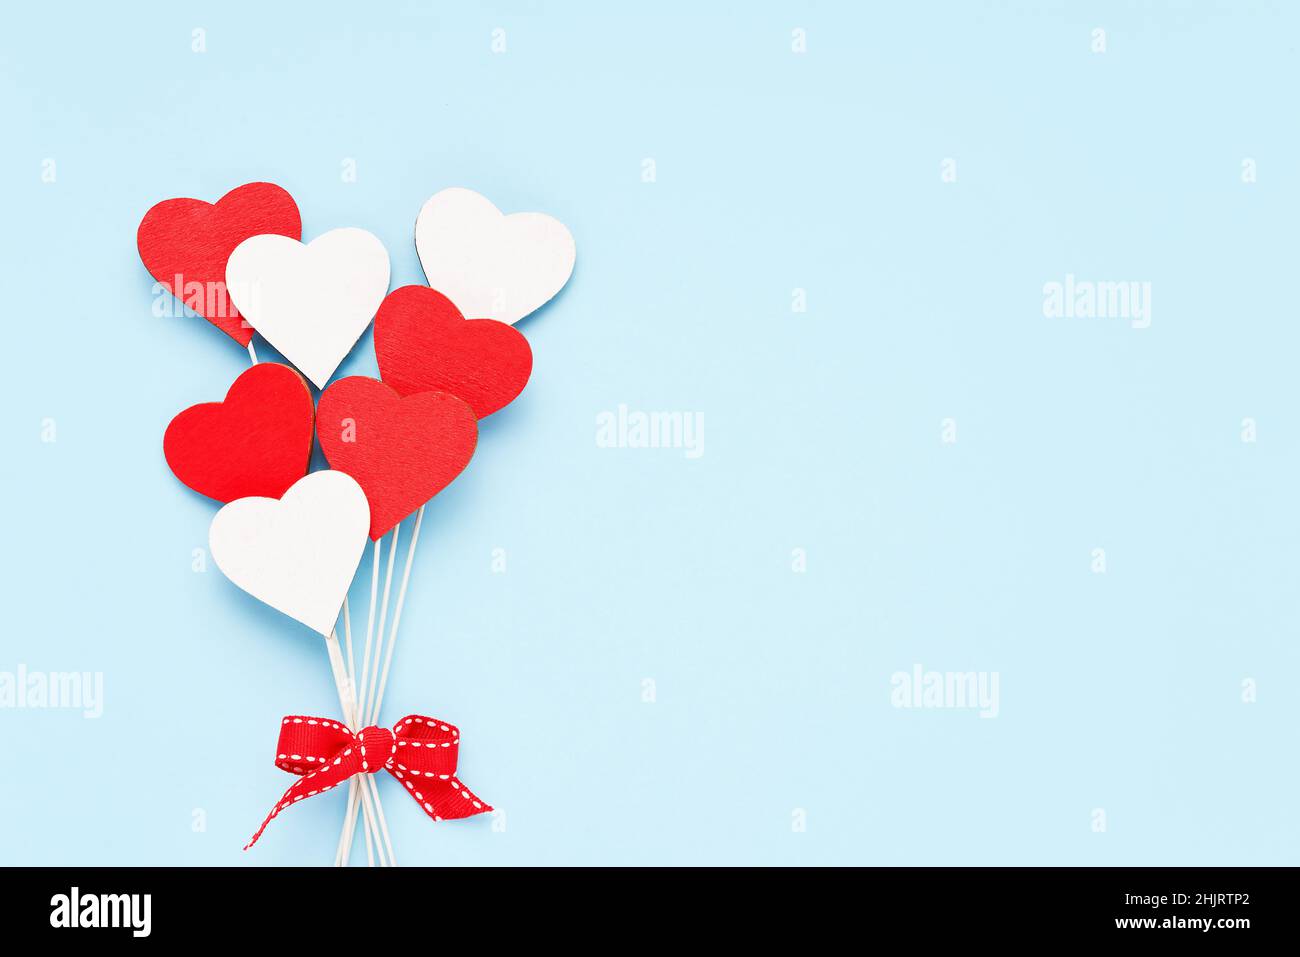 Valentinstag Hintergrund. Rote und weiße Holzherzen auf hellblauem Hintergrund. Festliche Weihnachtskarte. Flach liegend, Platz für Text kopieren Stockfoto